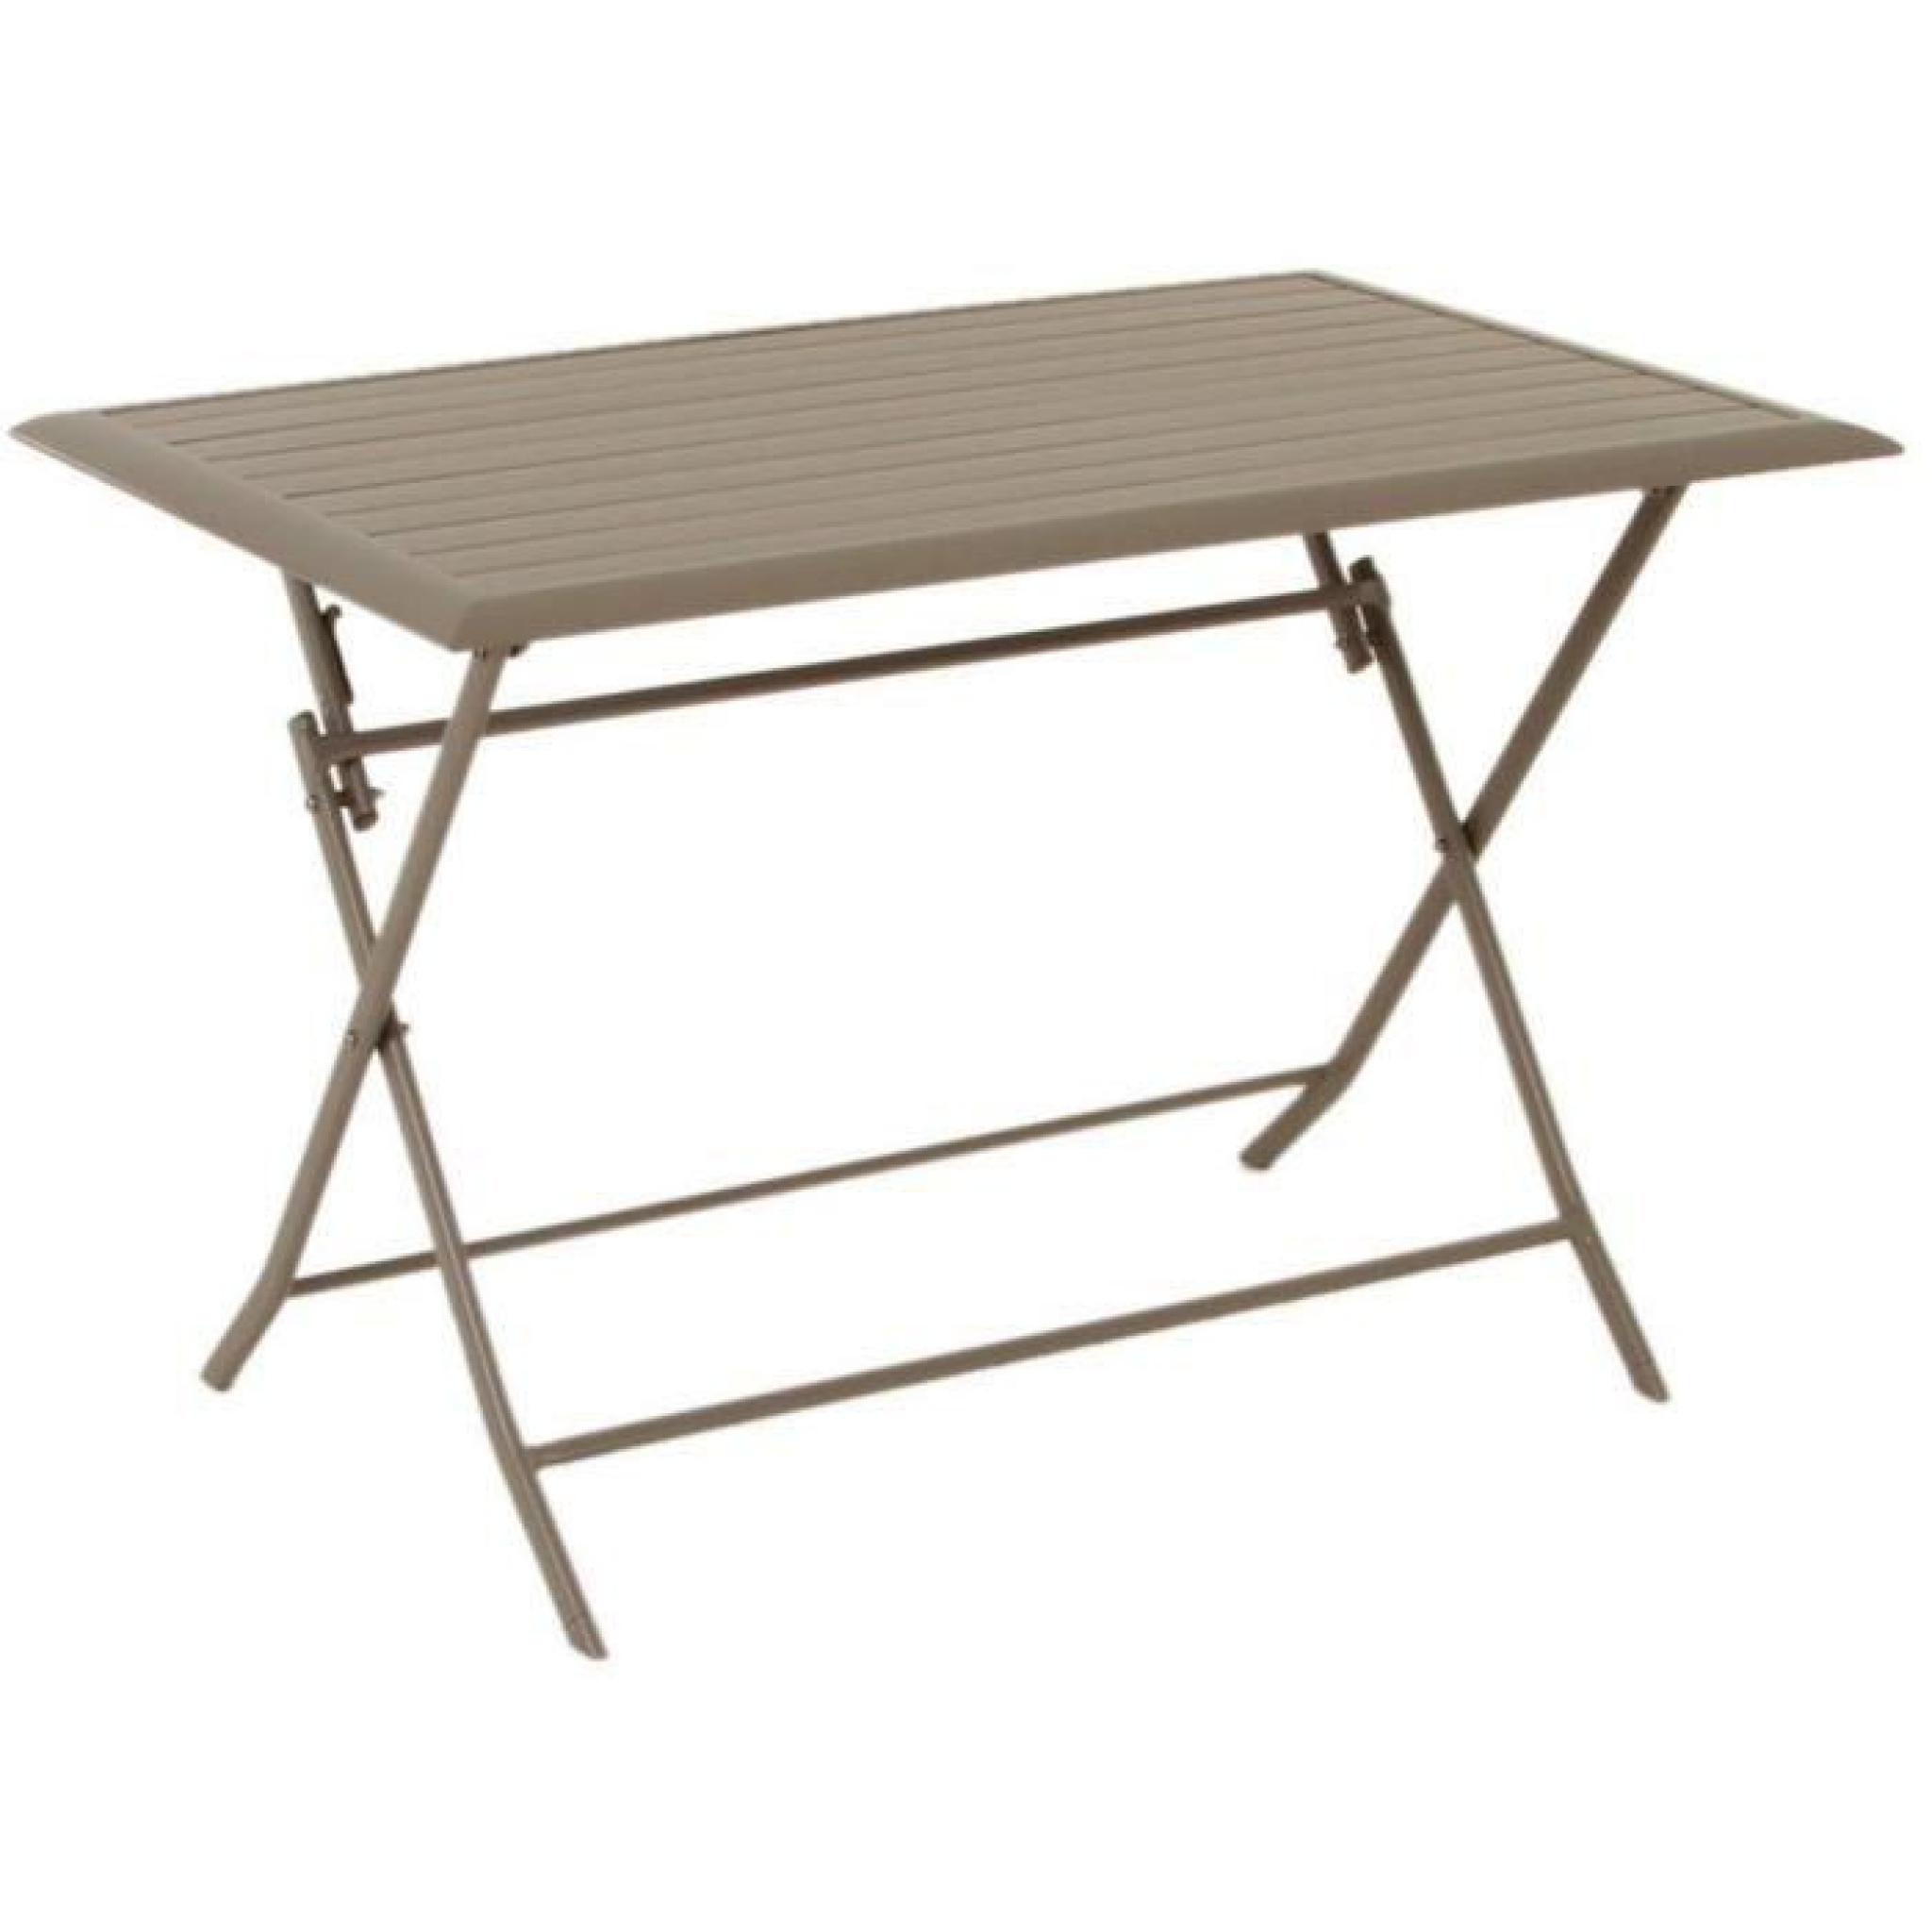 Table pliante rectangulaire en aluminium coloris taupe - Dim : L 150 x P 80 x H 71 cm 